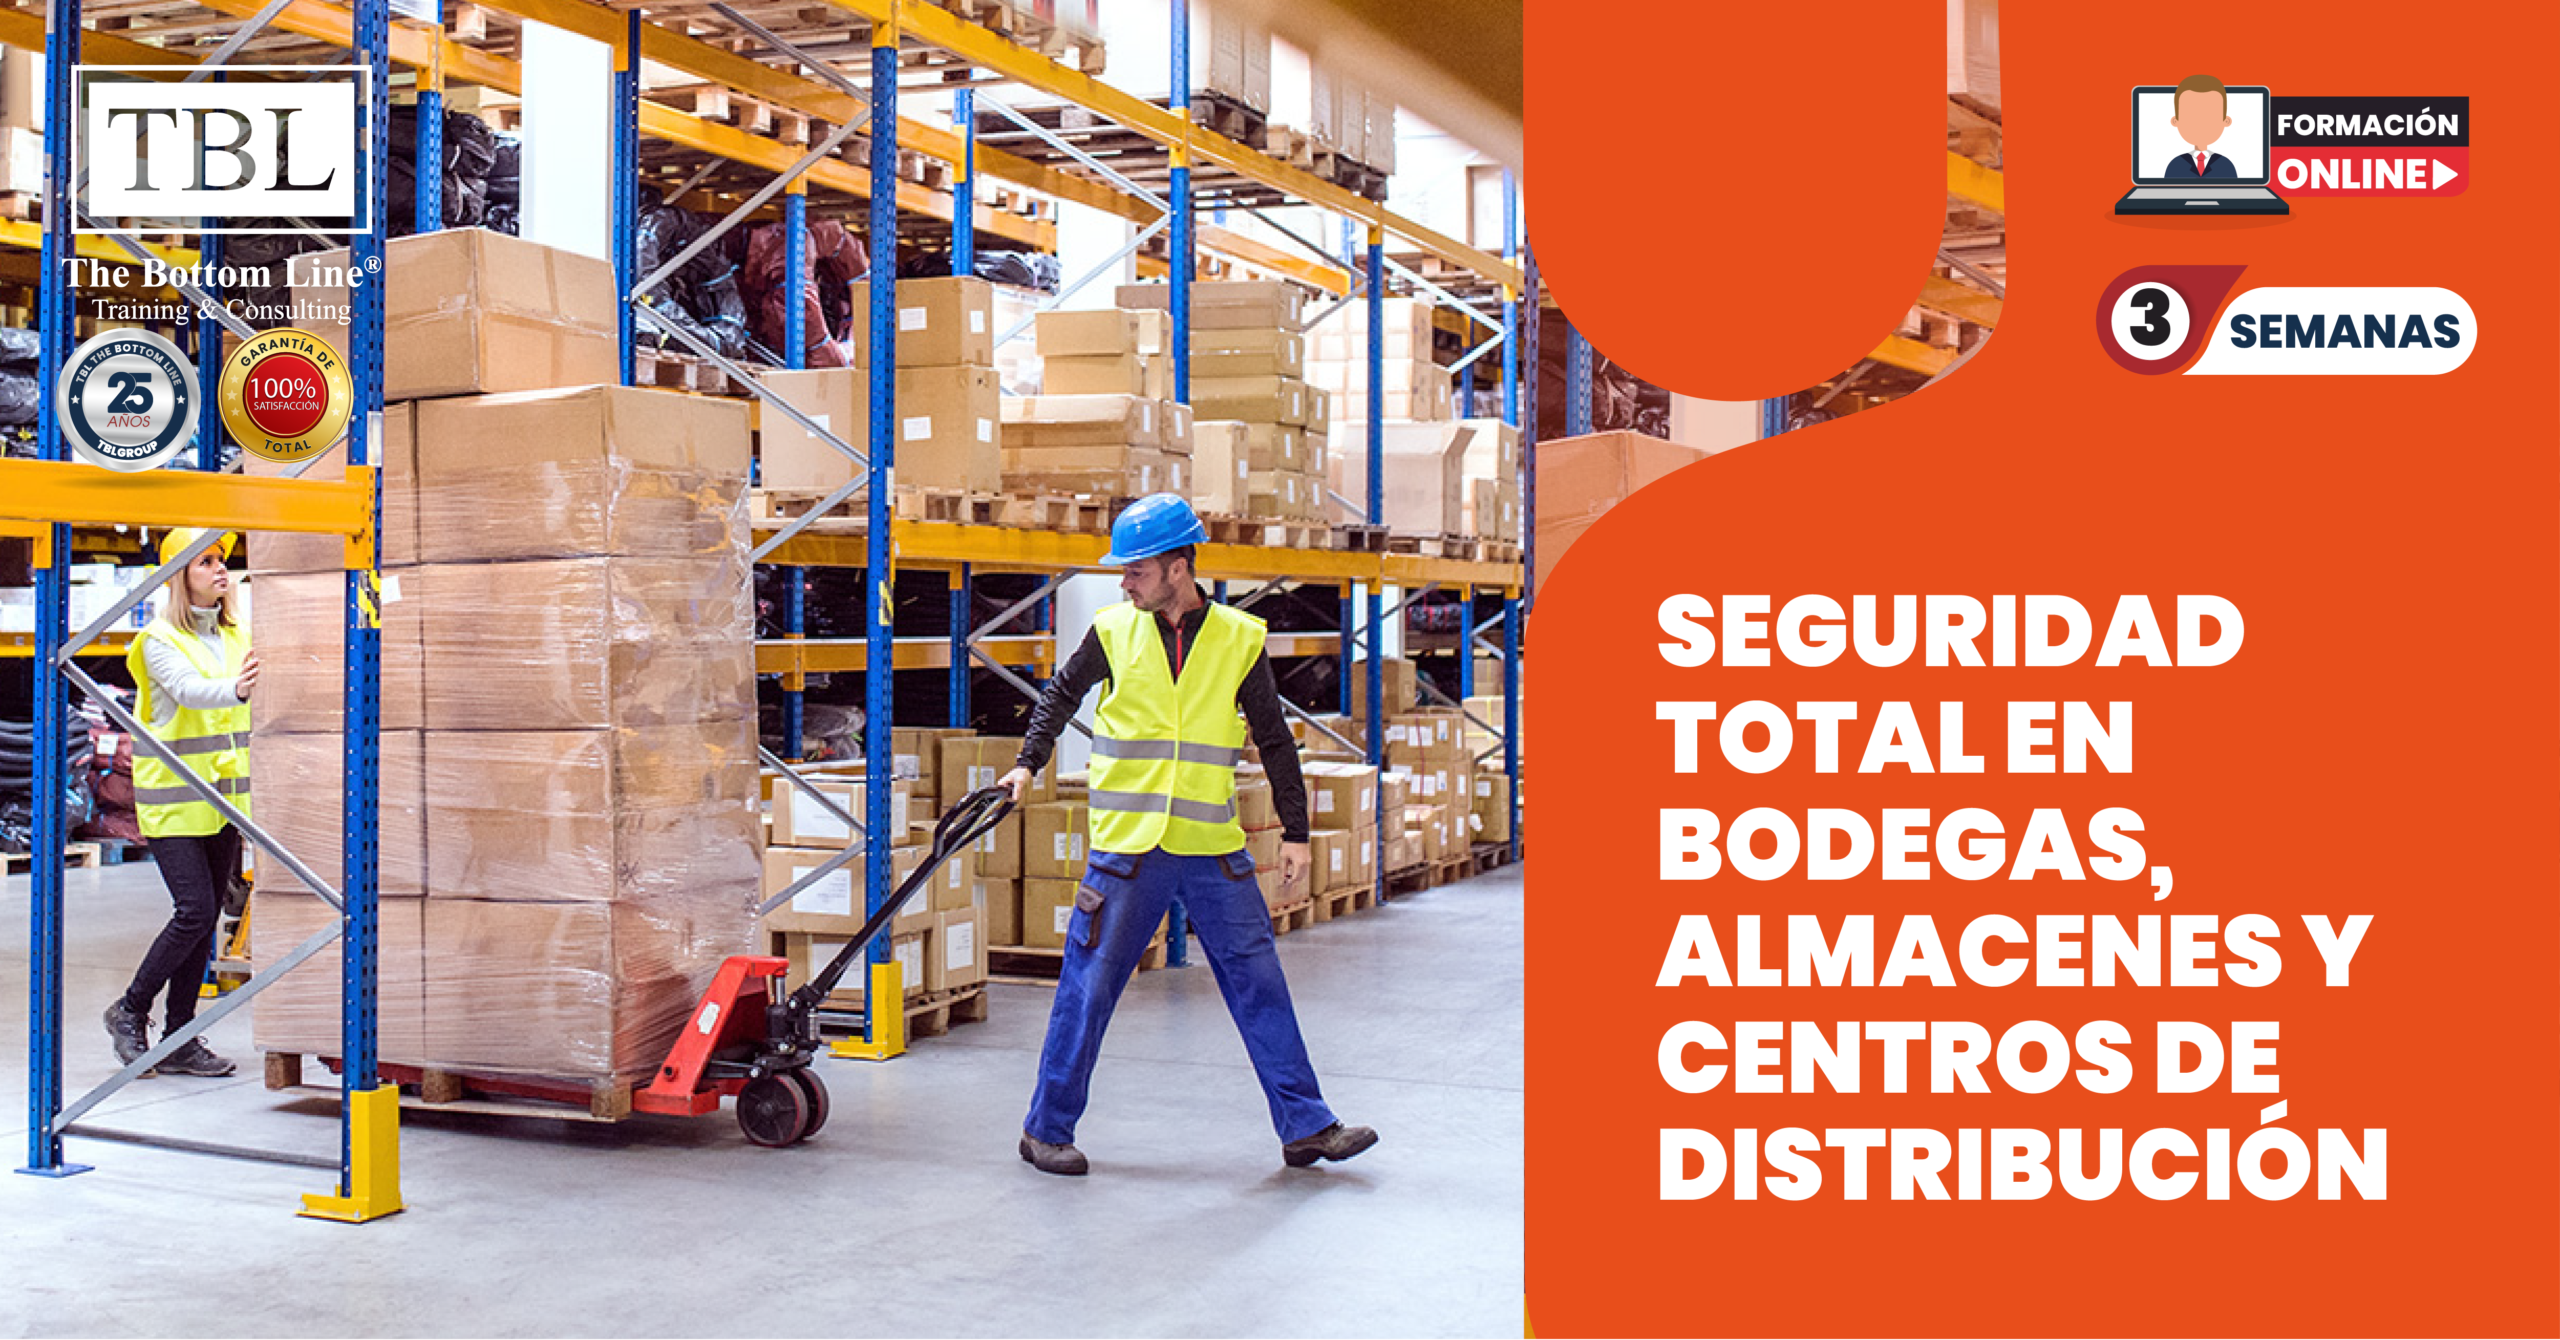 Seguridad Total en Bodegas, Almacenes y Centros de Distribución